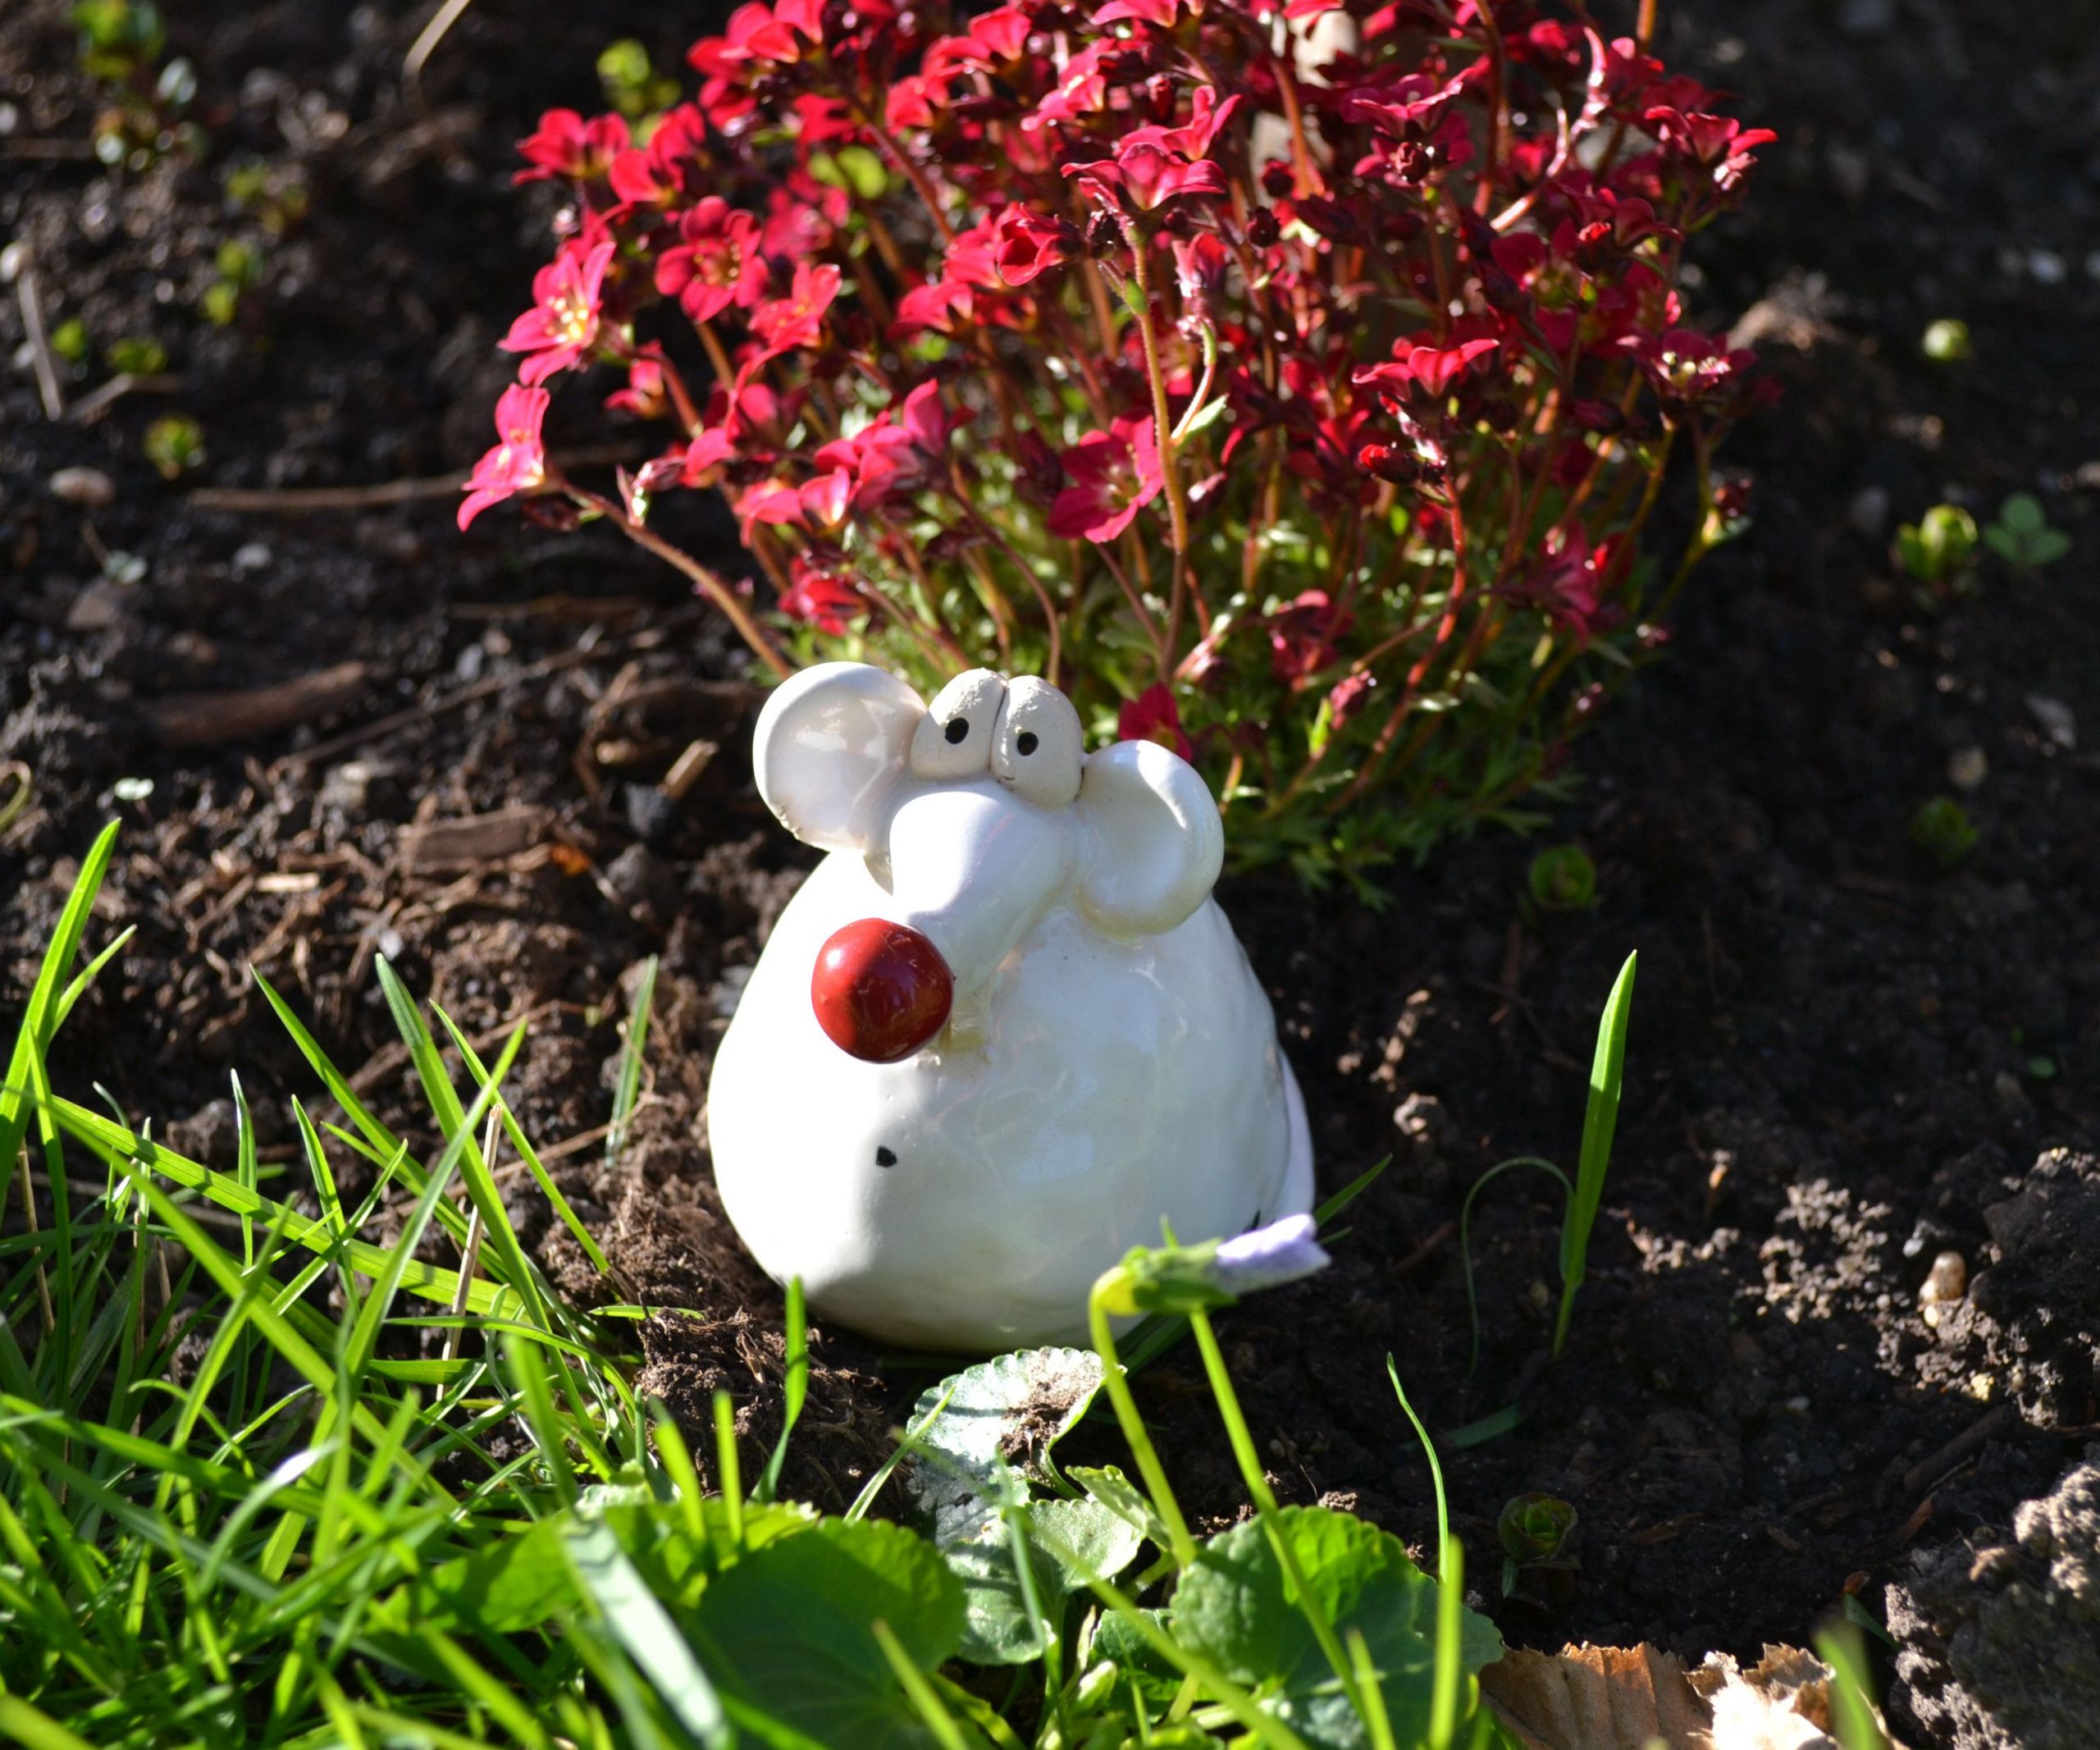 Gartendeko Keramik Elegant Ceramic Garden Decoration Cute Mouse Pinky In 2019